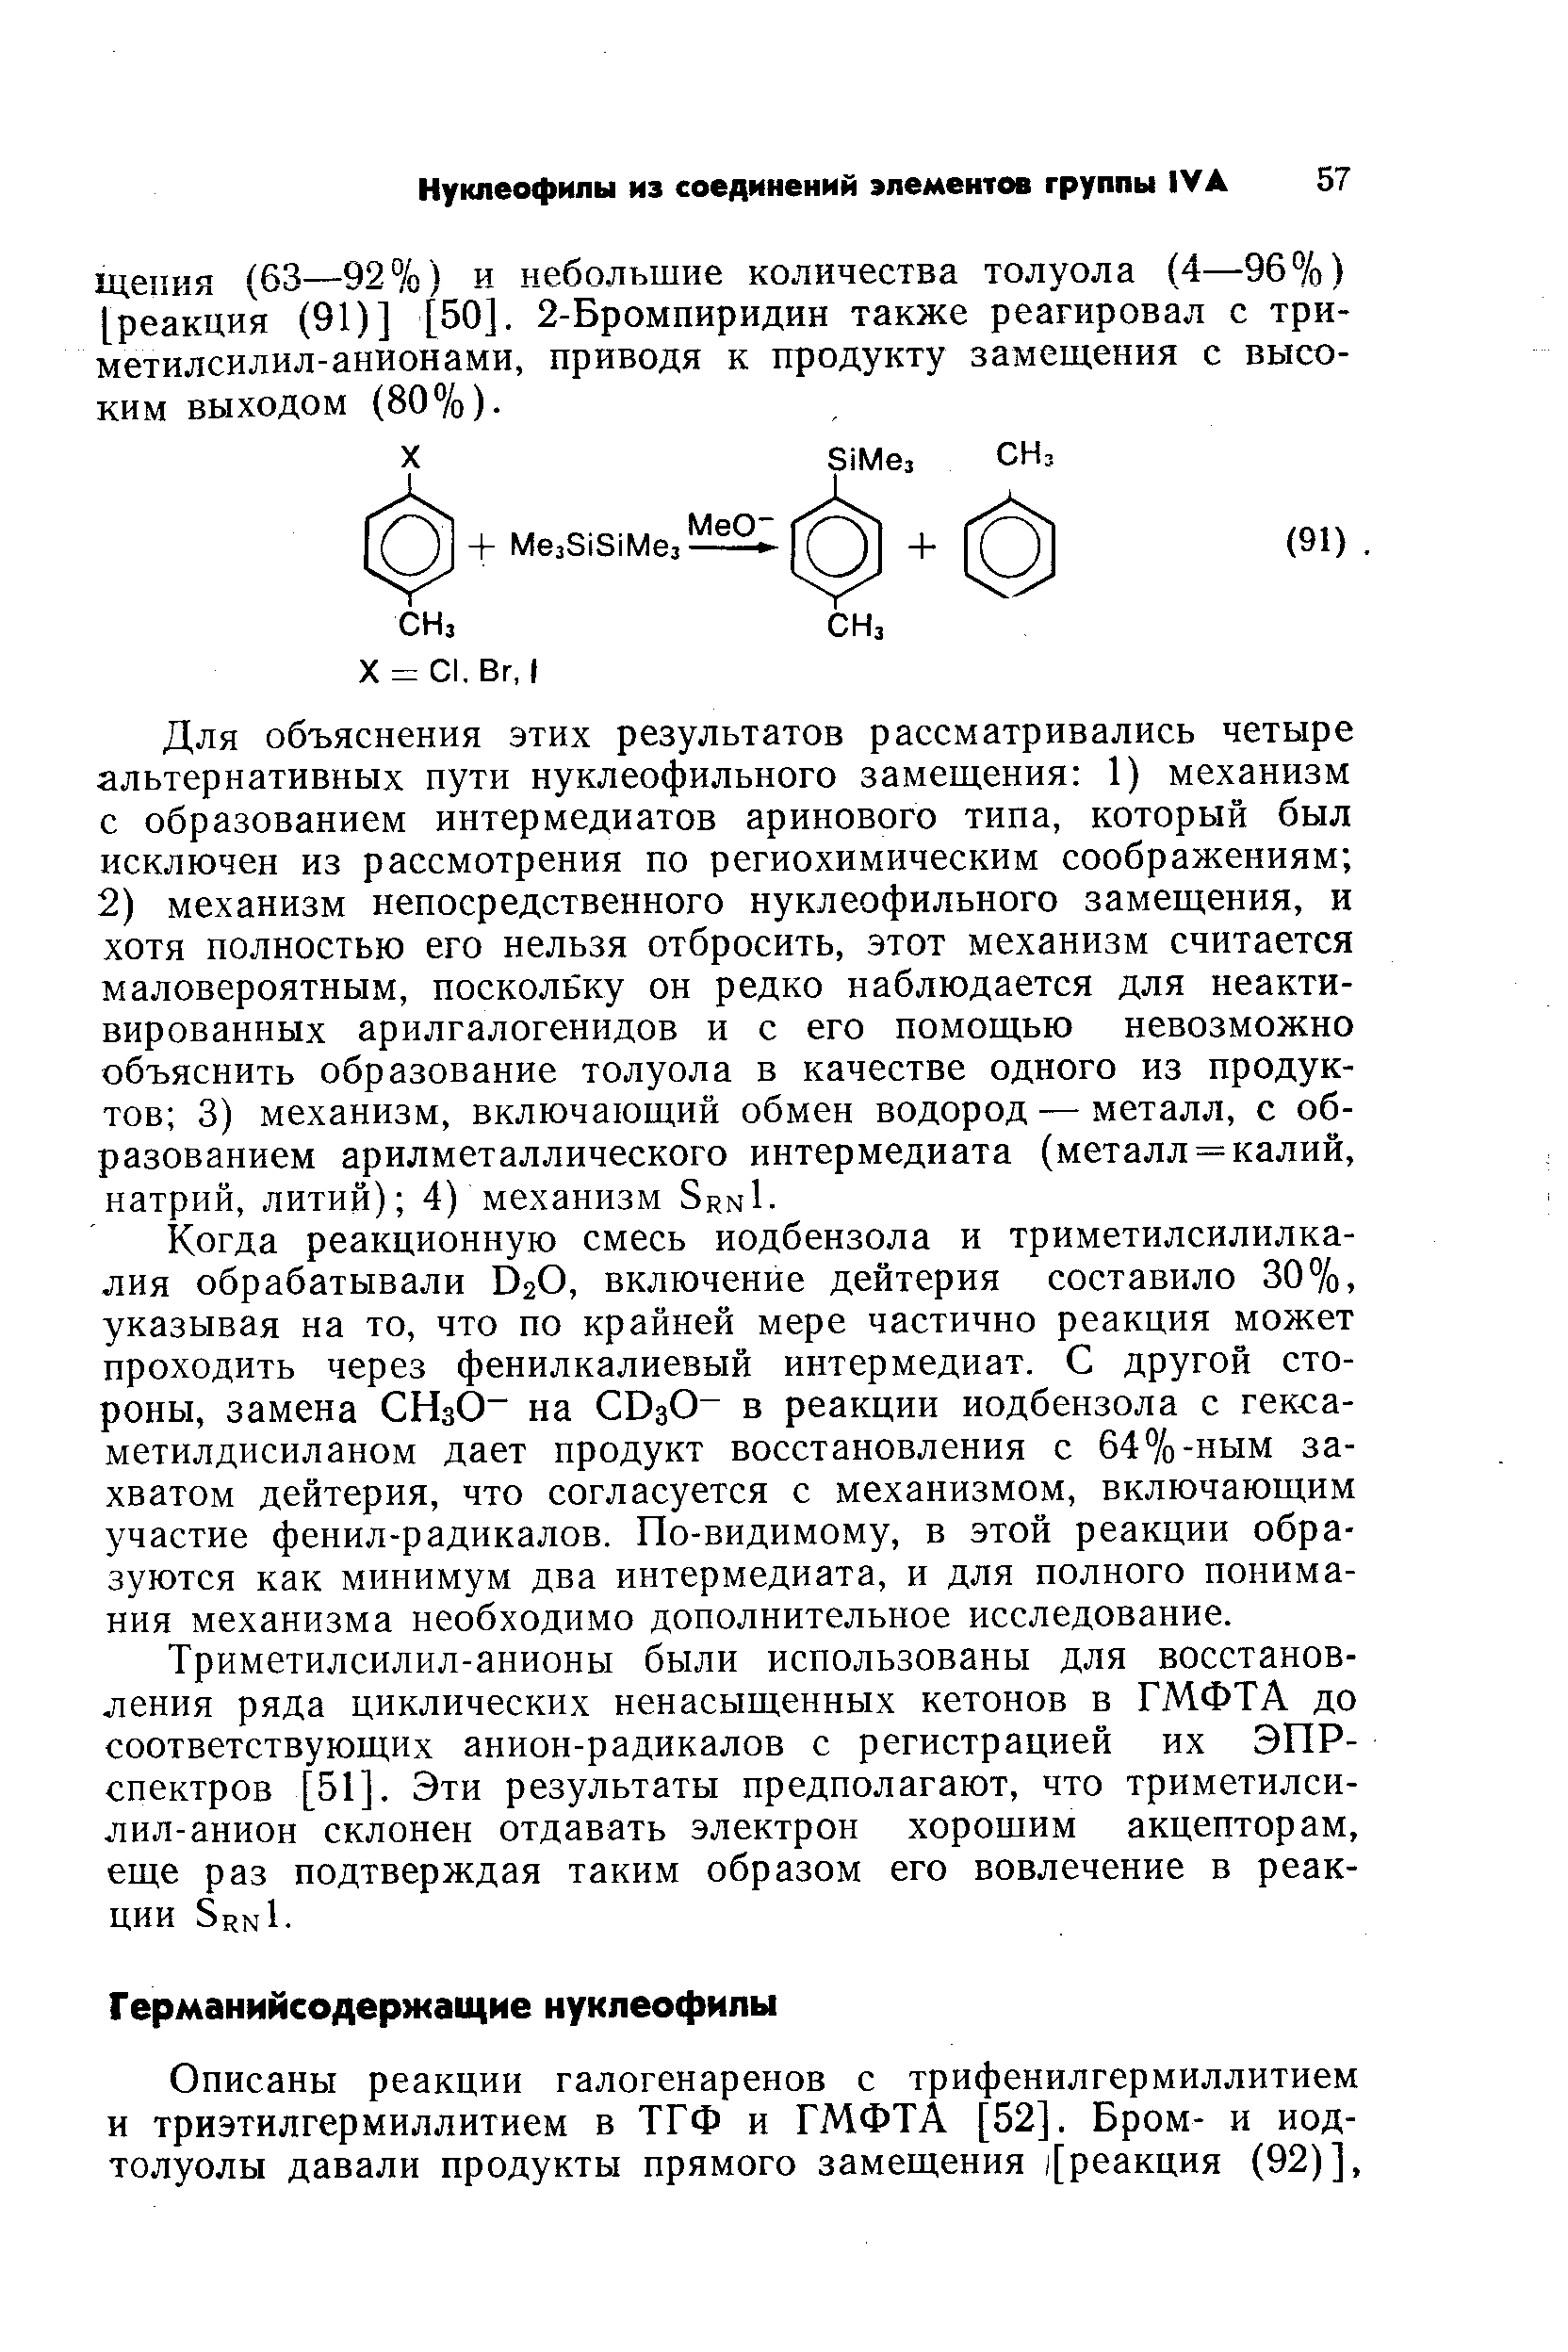 Триметилсилил-анионы были использованы для восстановления ряда циклических ненасыщенных кетонов в ГМФТА до соответствующих анион-радикалов с регистрацией их ЭПР-спектров [51]. Эти результаты предполагают, что триметилси-лил-анион склонен отдавать электрон хорошим акцепторам, еще раз подтверждая таким образом его вовлечение в реакции SrnI.